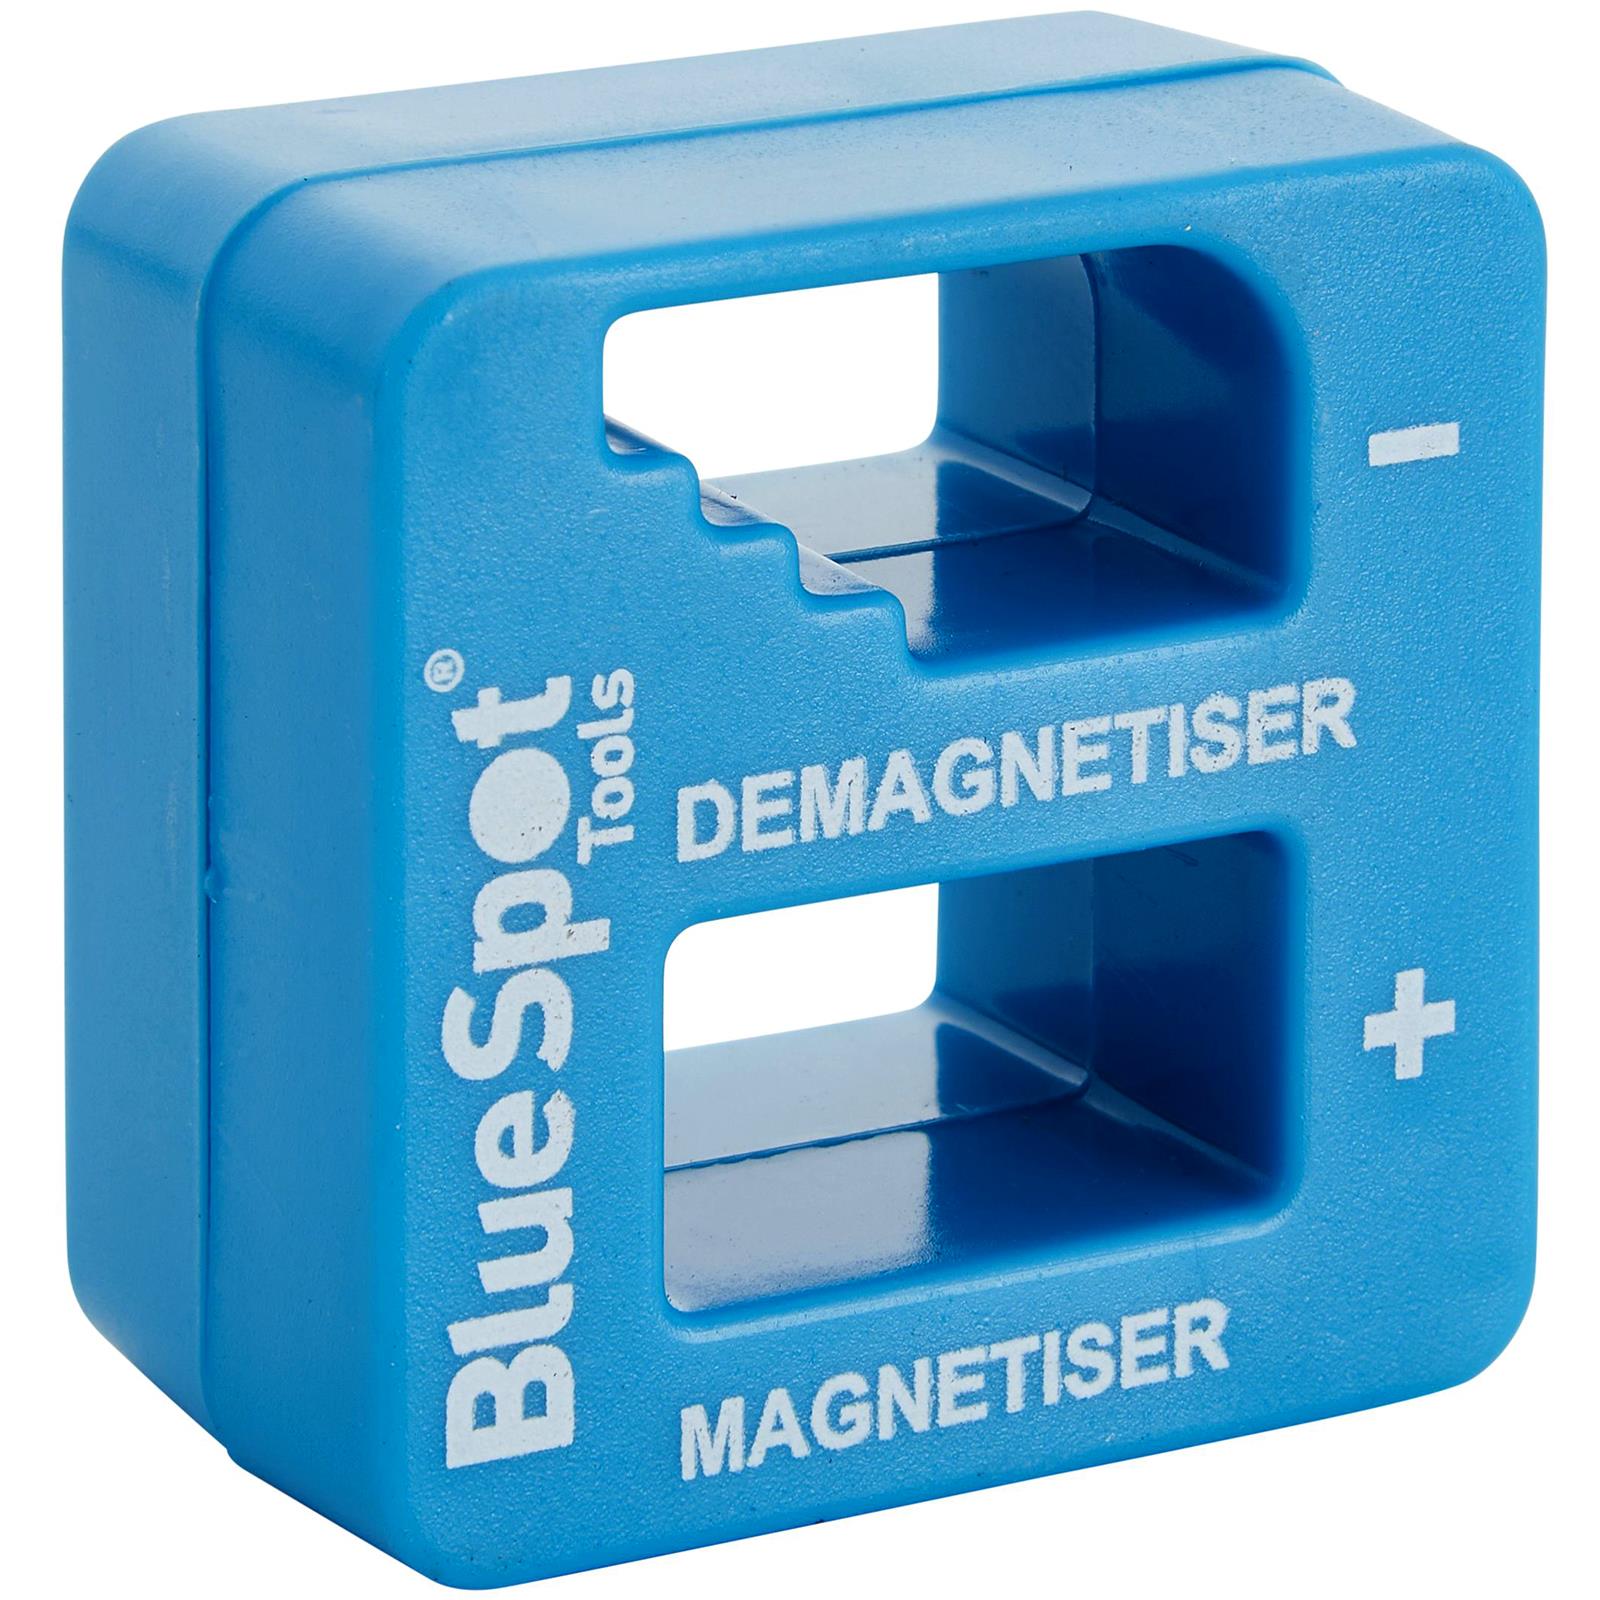 BlueSpot Magnetiser and Demagnetiser